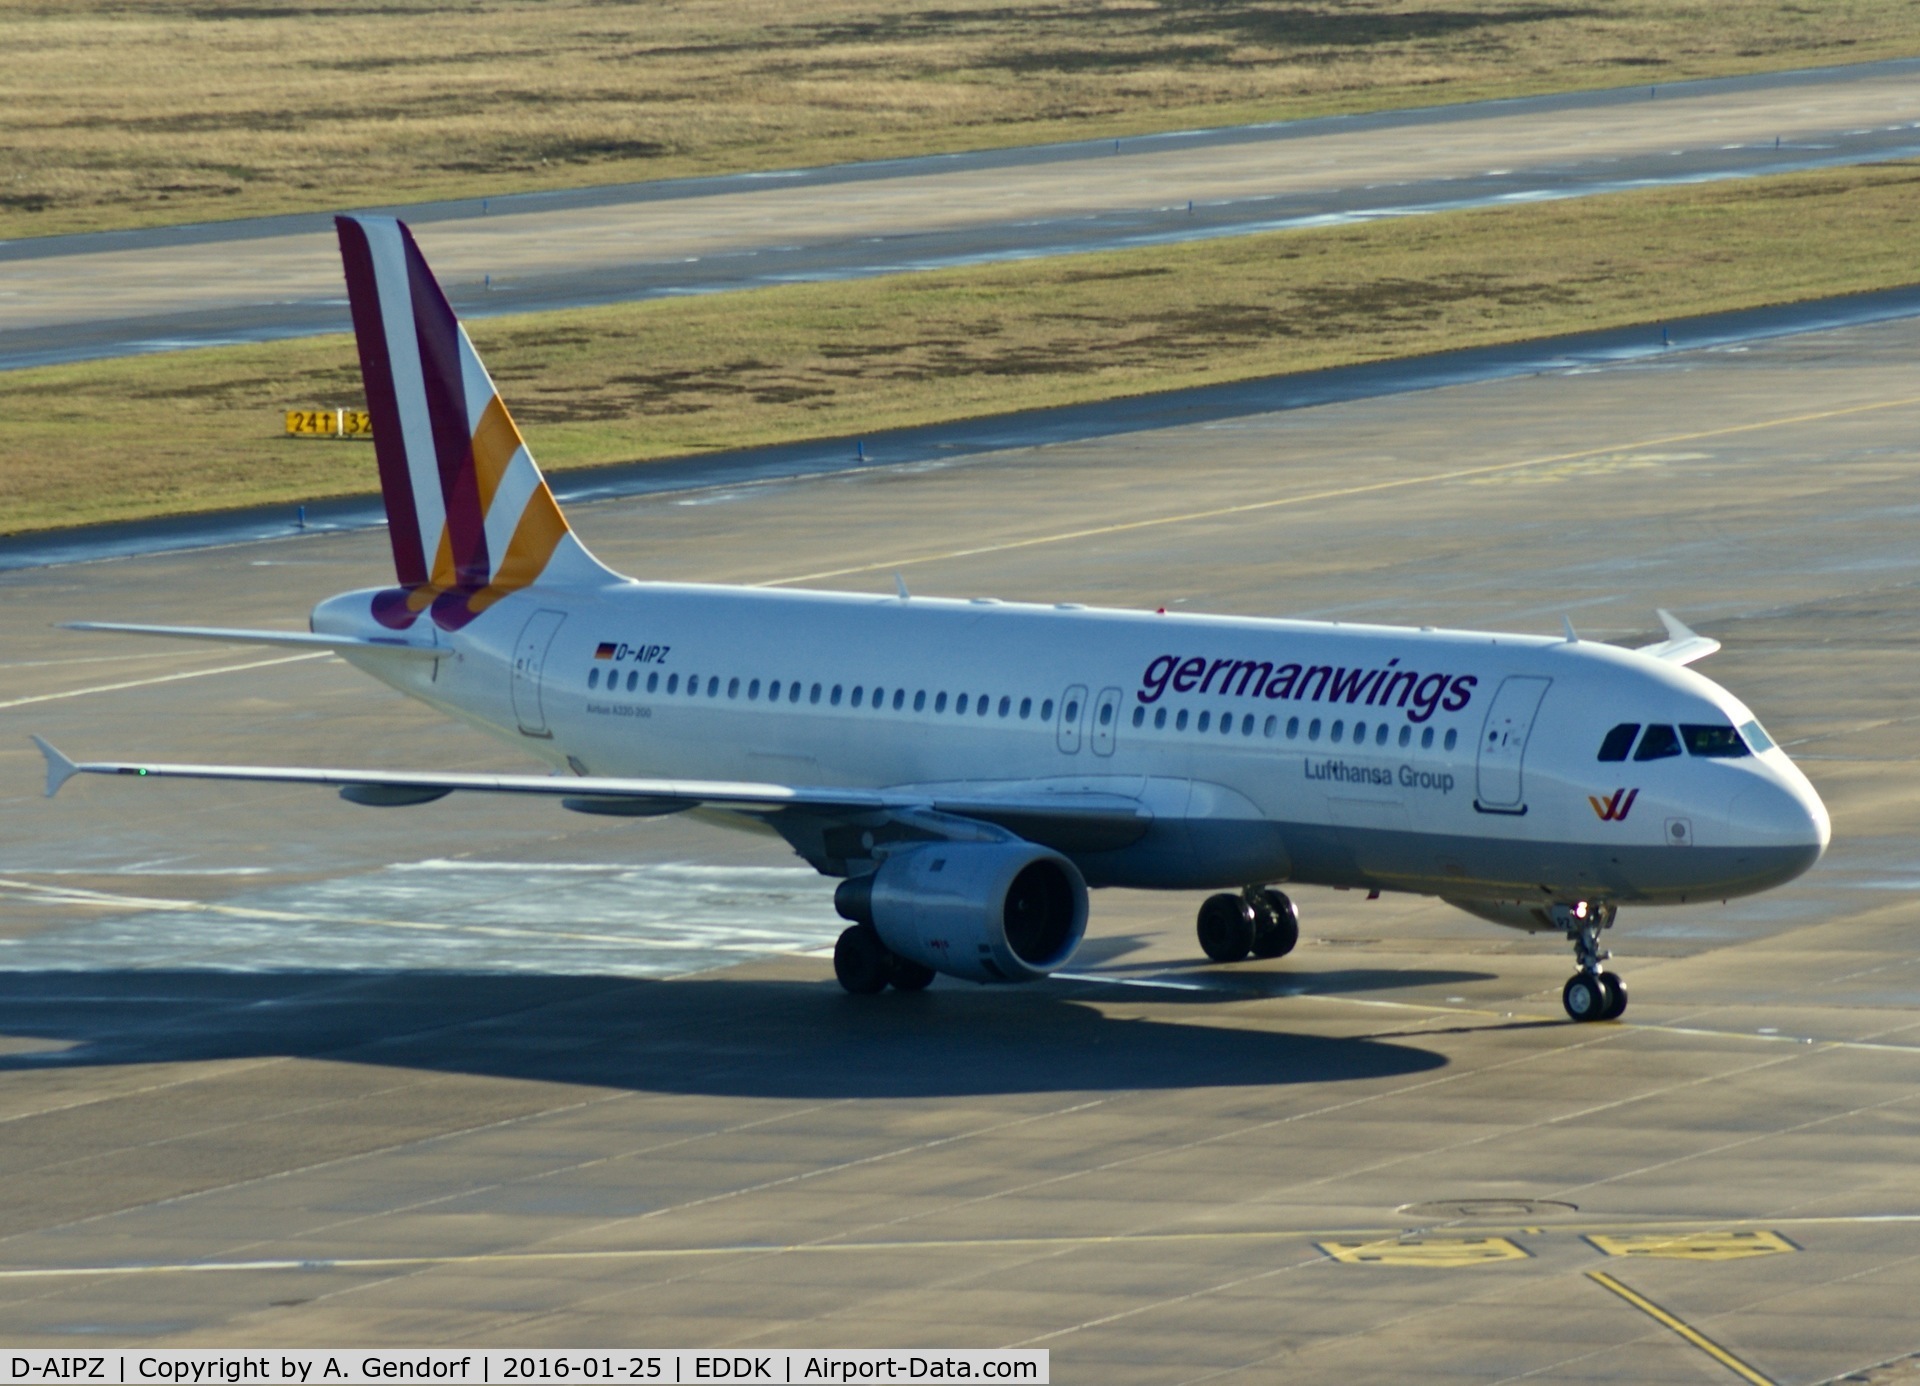 D-AIPZ, 1991 Airbus A320-211 C/N 162, Germanwings, is here taxiing at Köln / Bonn Airport(EDDK)